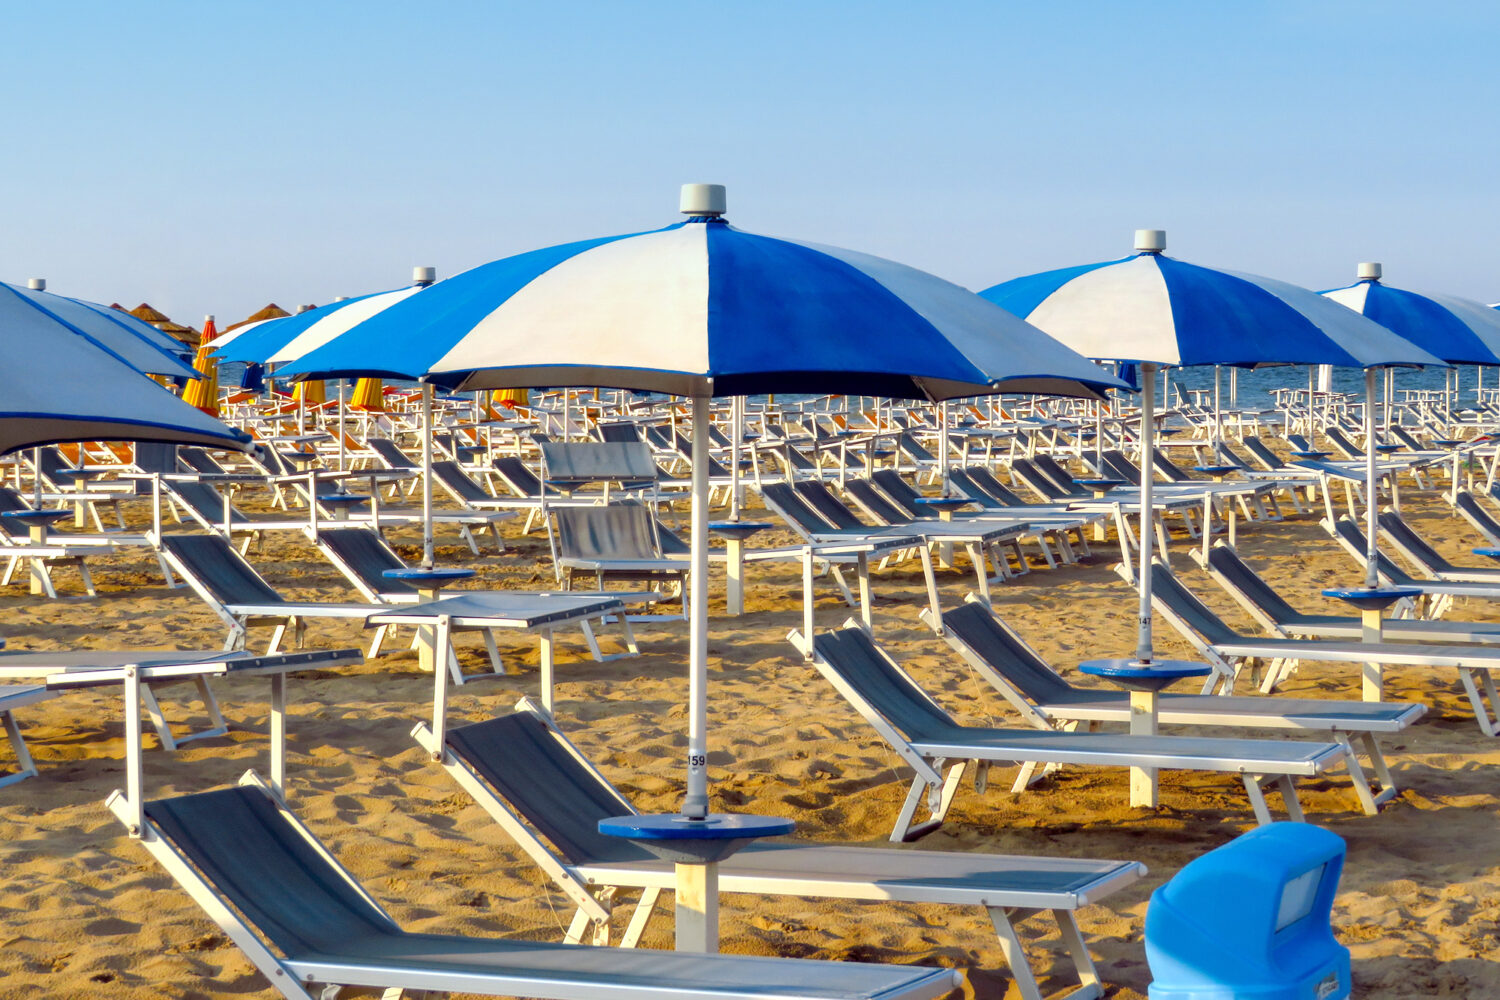 Sdrai blu e ombrelloni a spicchi bianchi e blu sulla spiaggia di Caorle